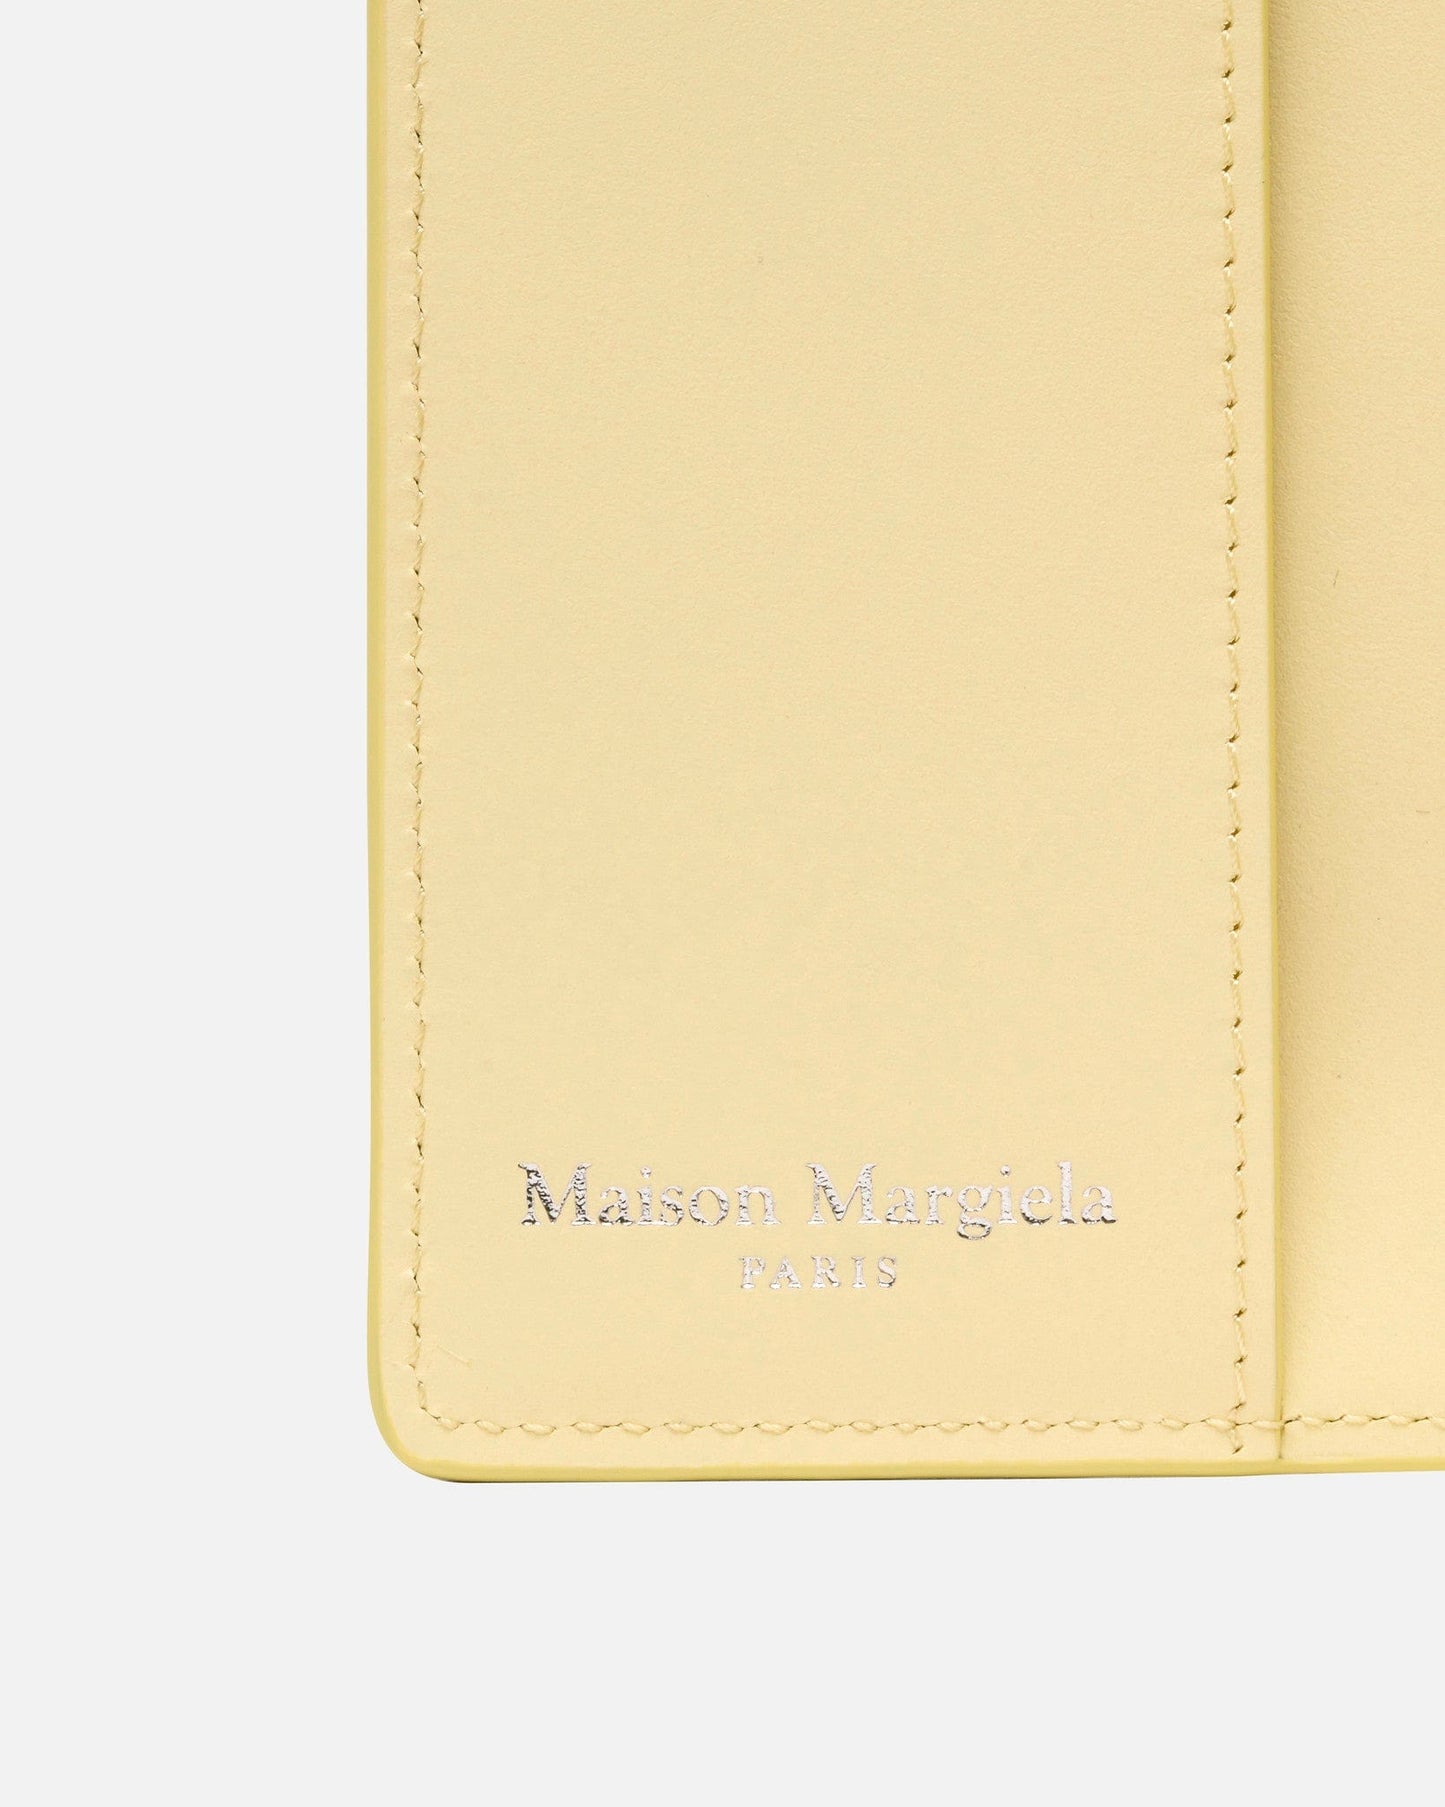 Maison Margiela Leather Goods O/S Passport Cover in Lemon